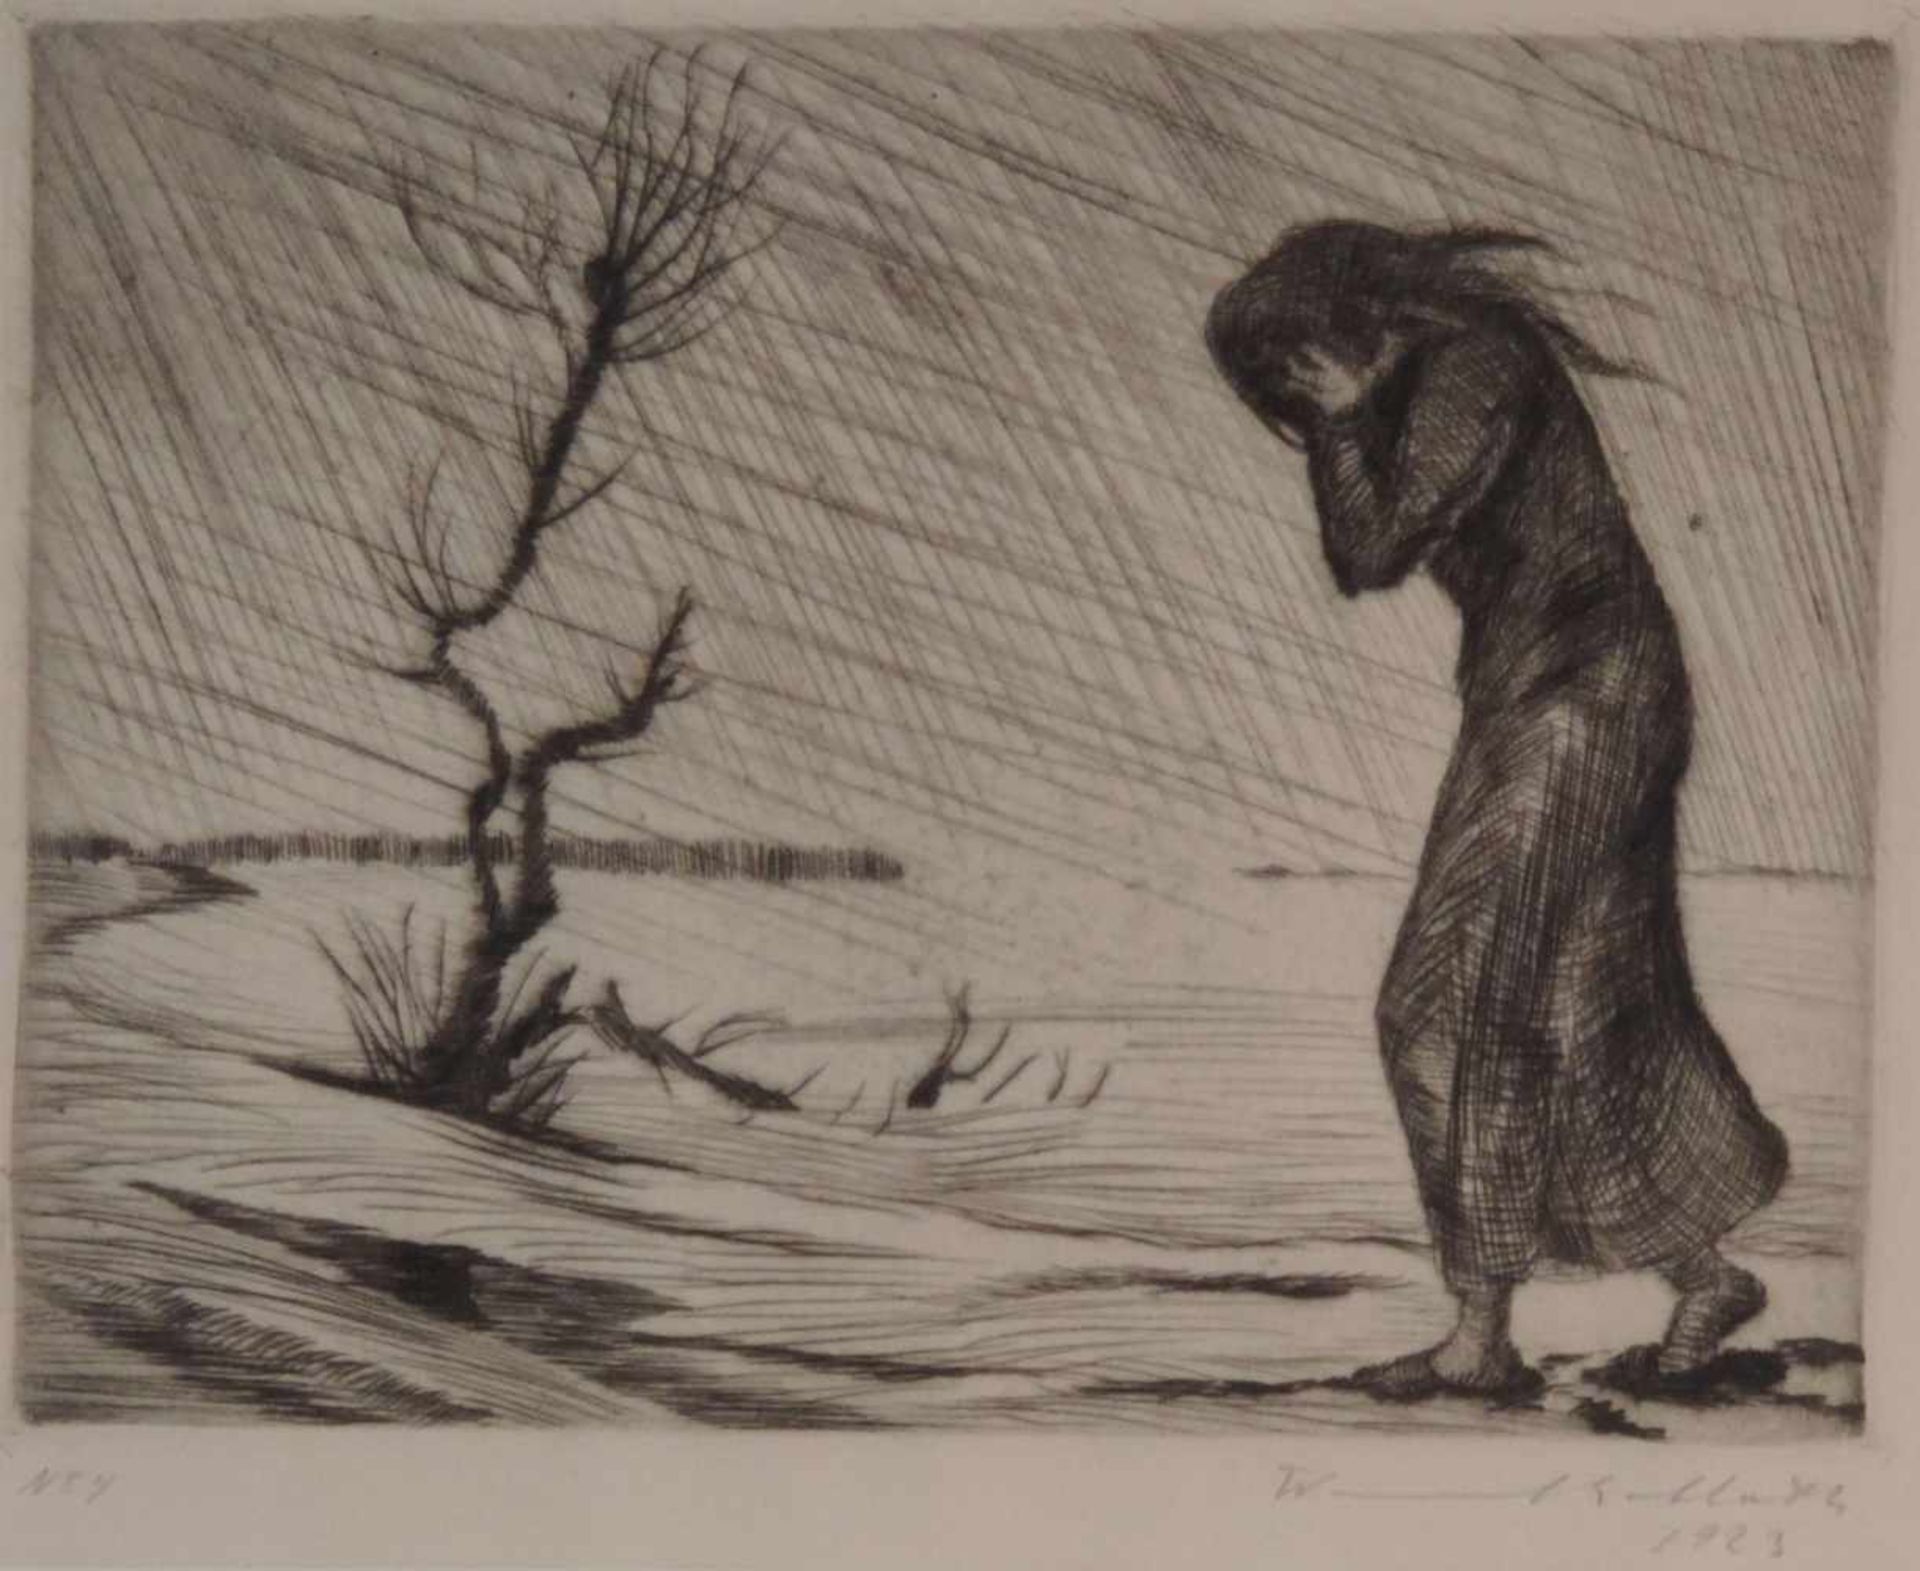 ANONYMUS/MA, Kupferstich, Mädchen in Sturm, im Einfall num 4, unlerserl sign u dat 1923, 13,5 x